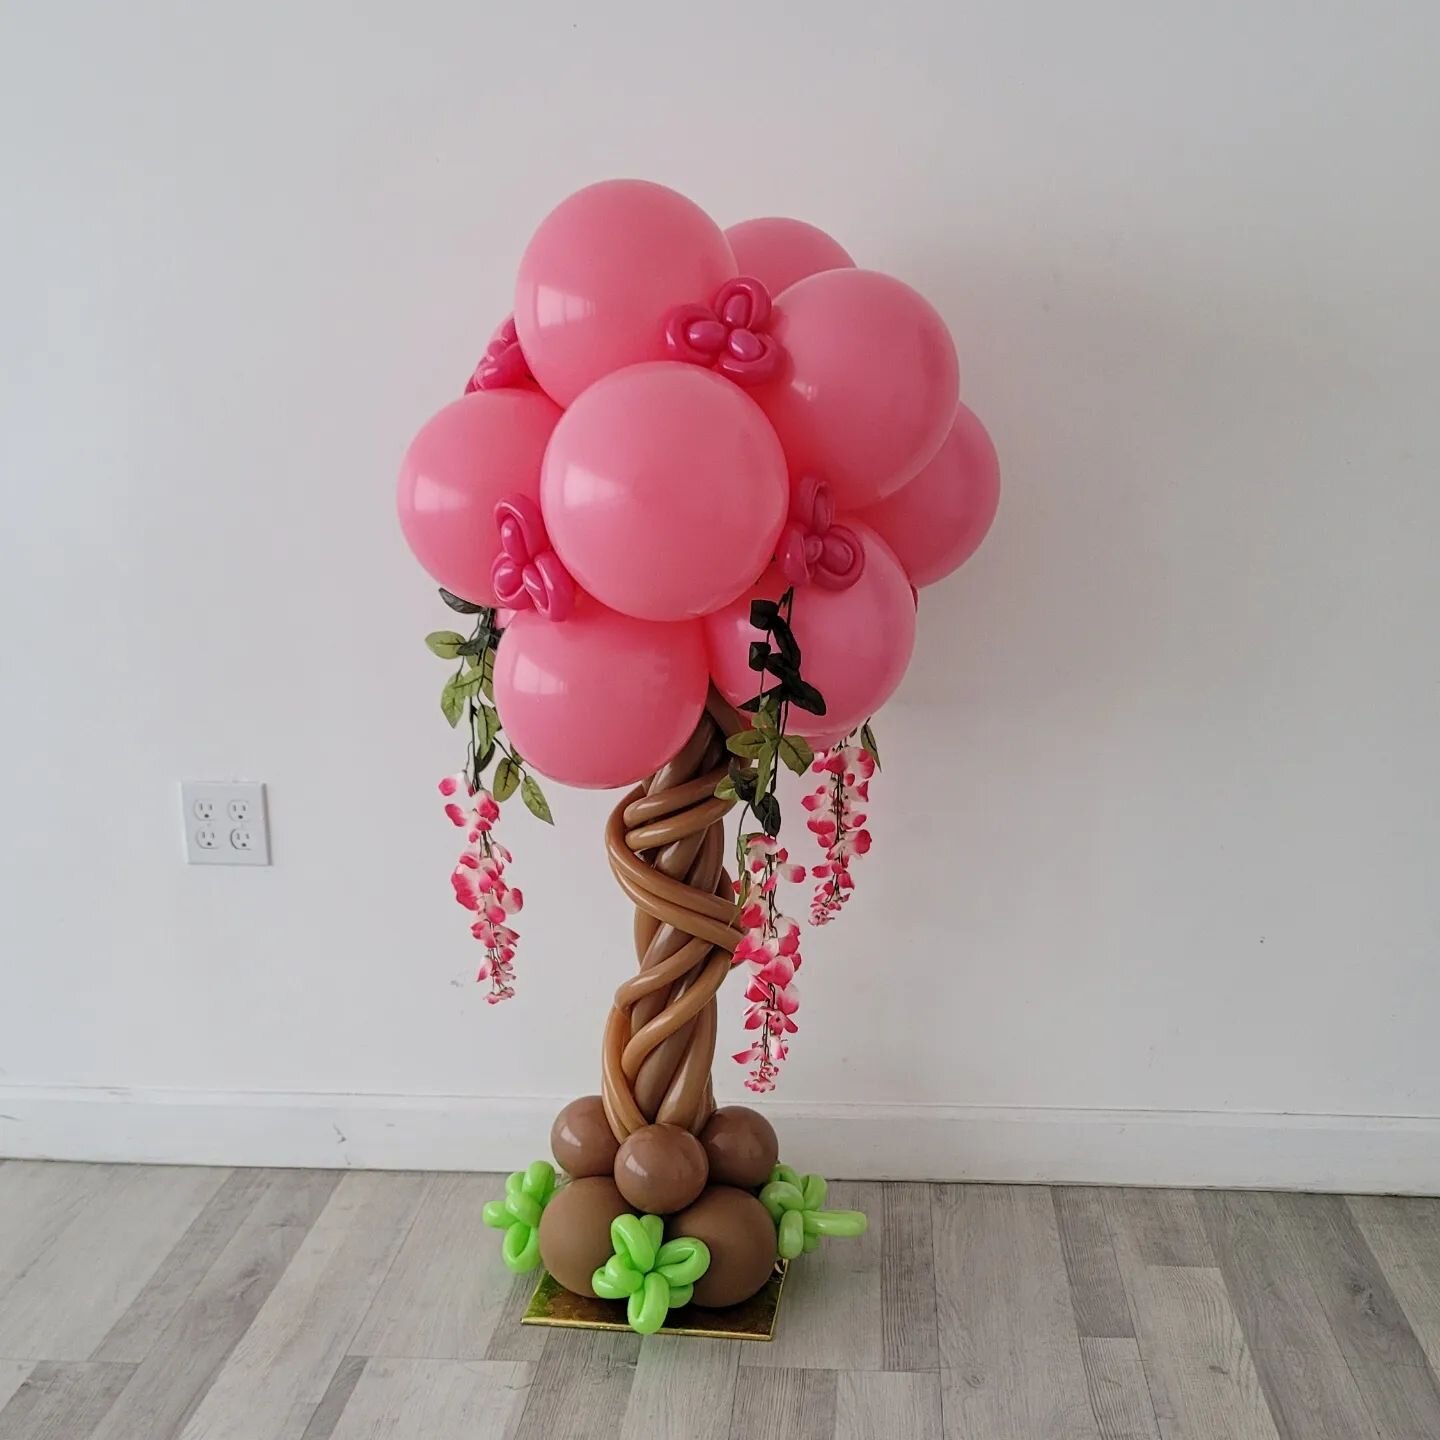 &quot;Encanto&quot; Theme Centerpiece 
#encantobirthday #encantoparty #organicballoondecor #centerpieces #balloons #globos